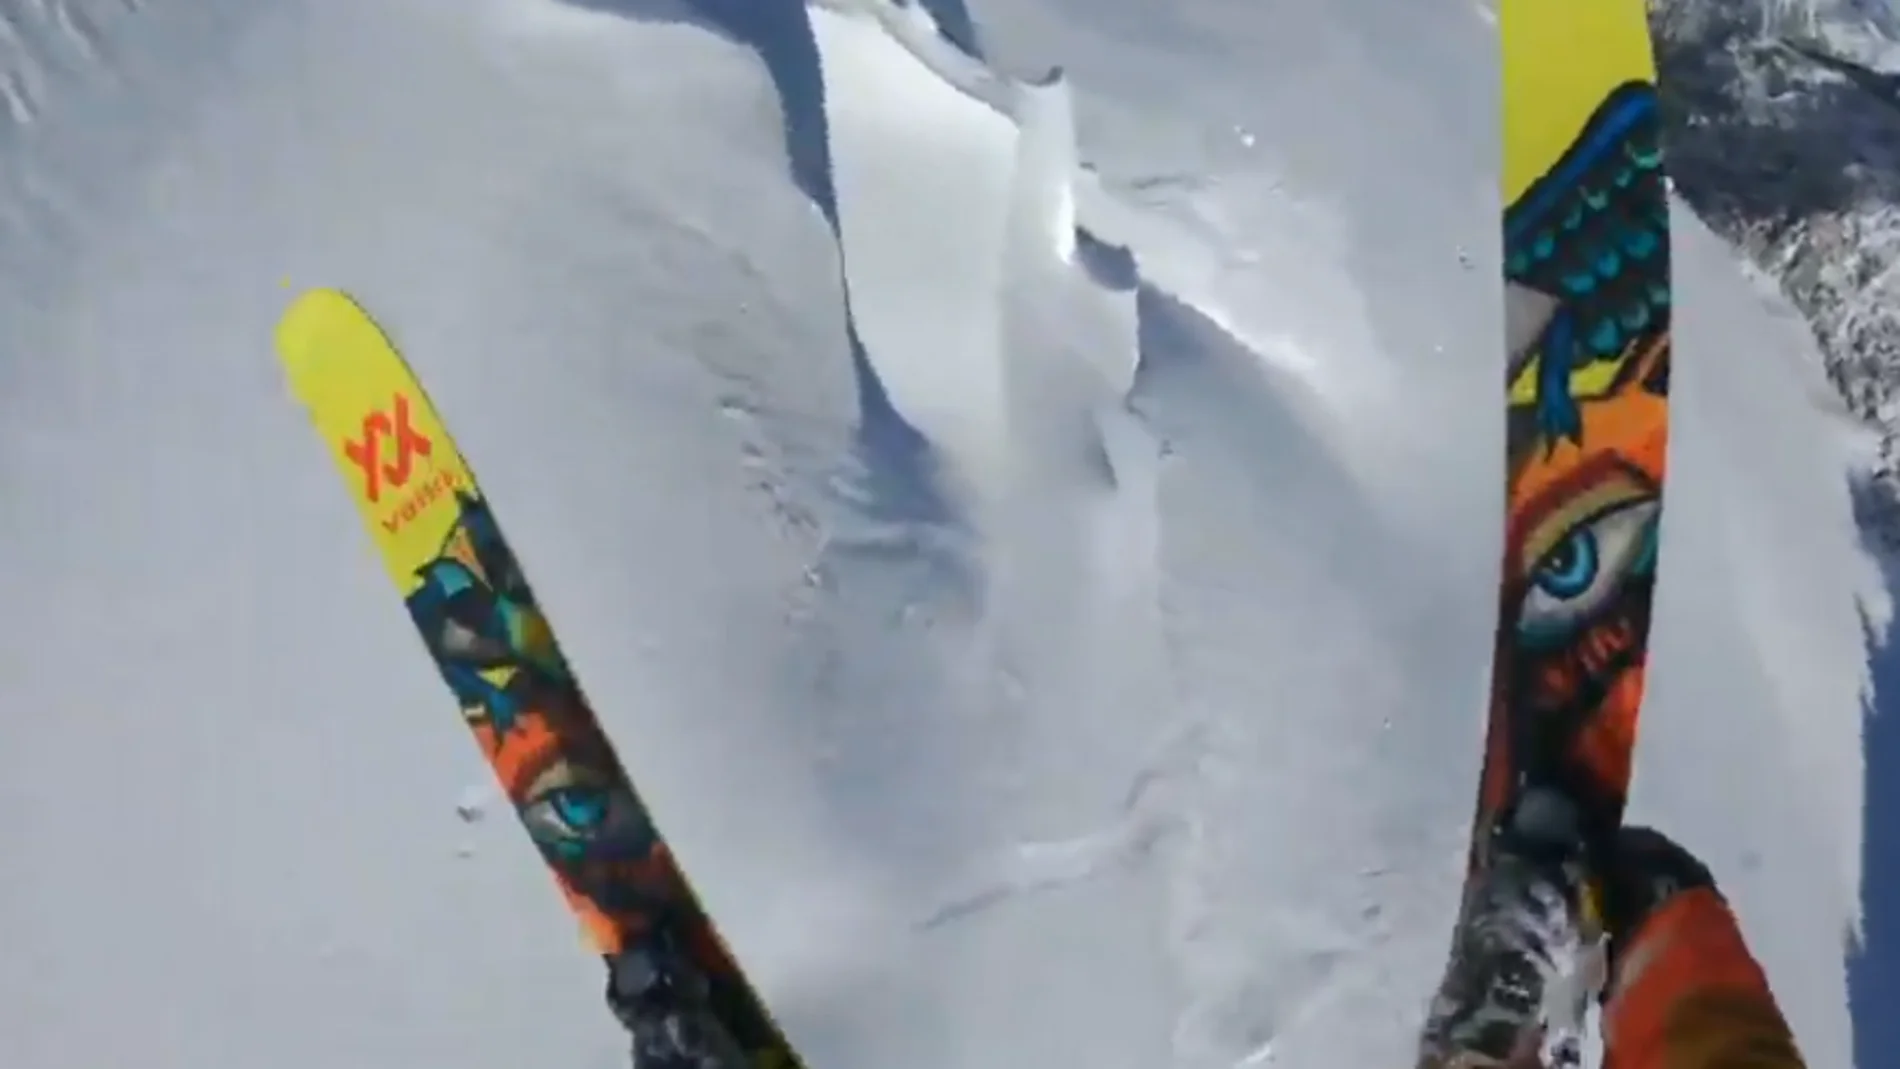 Markus Eder, el mejor esquiador del mundo, se juega la vida esquiando por un glaciar en los Alpes: "Podía haber una avalancha"